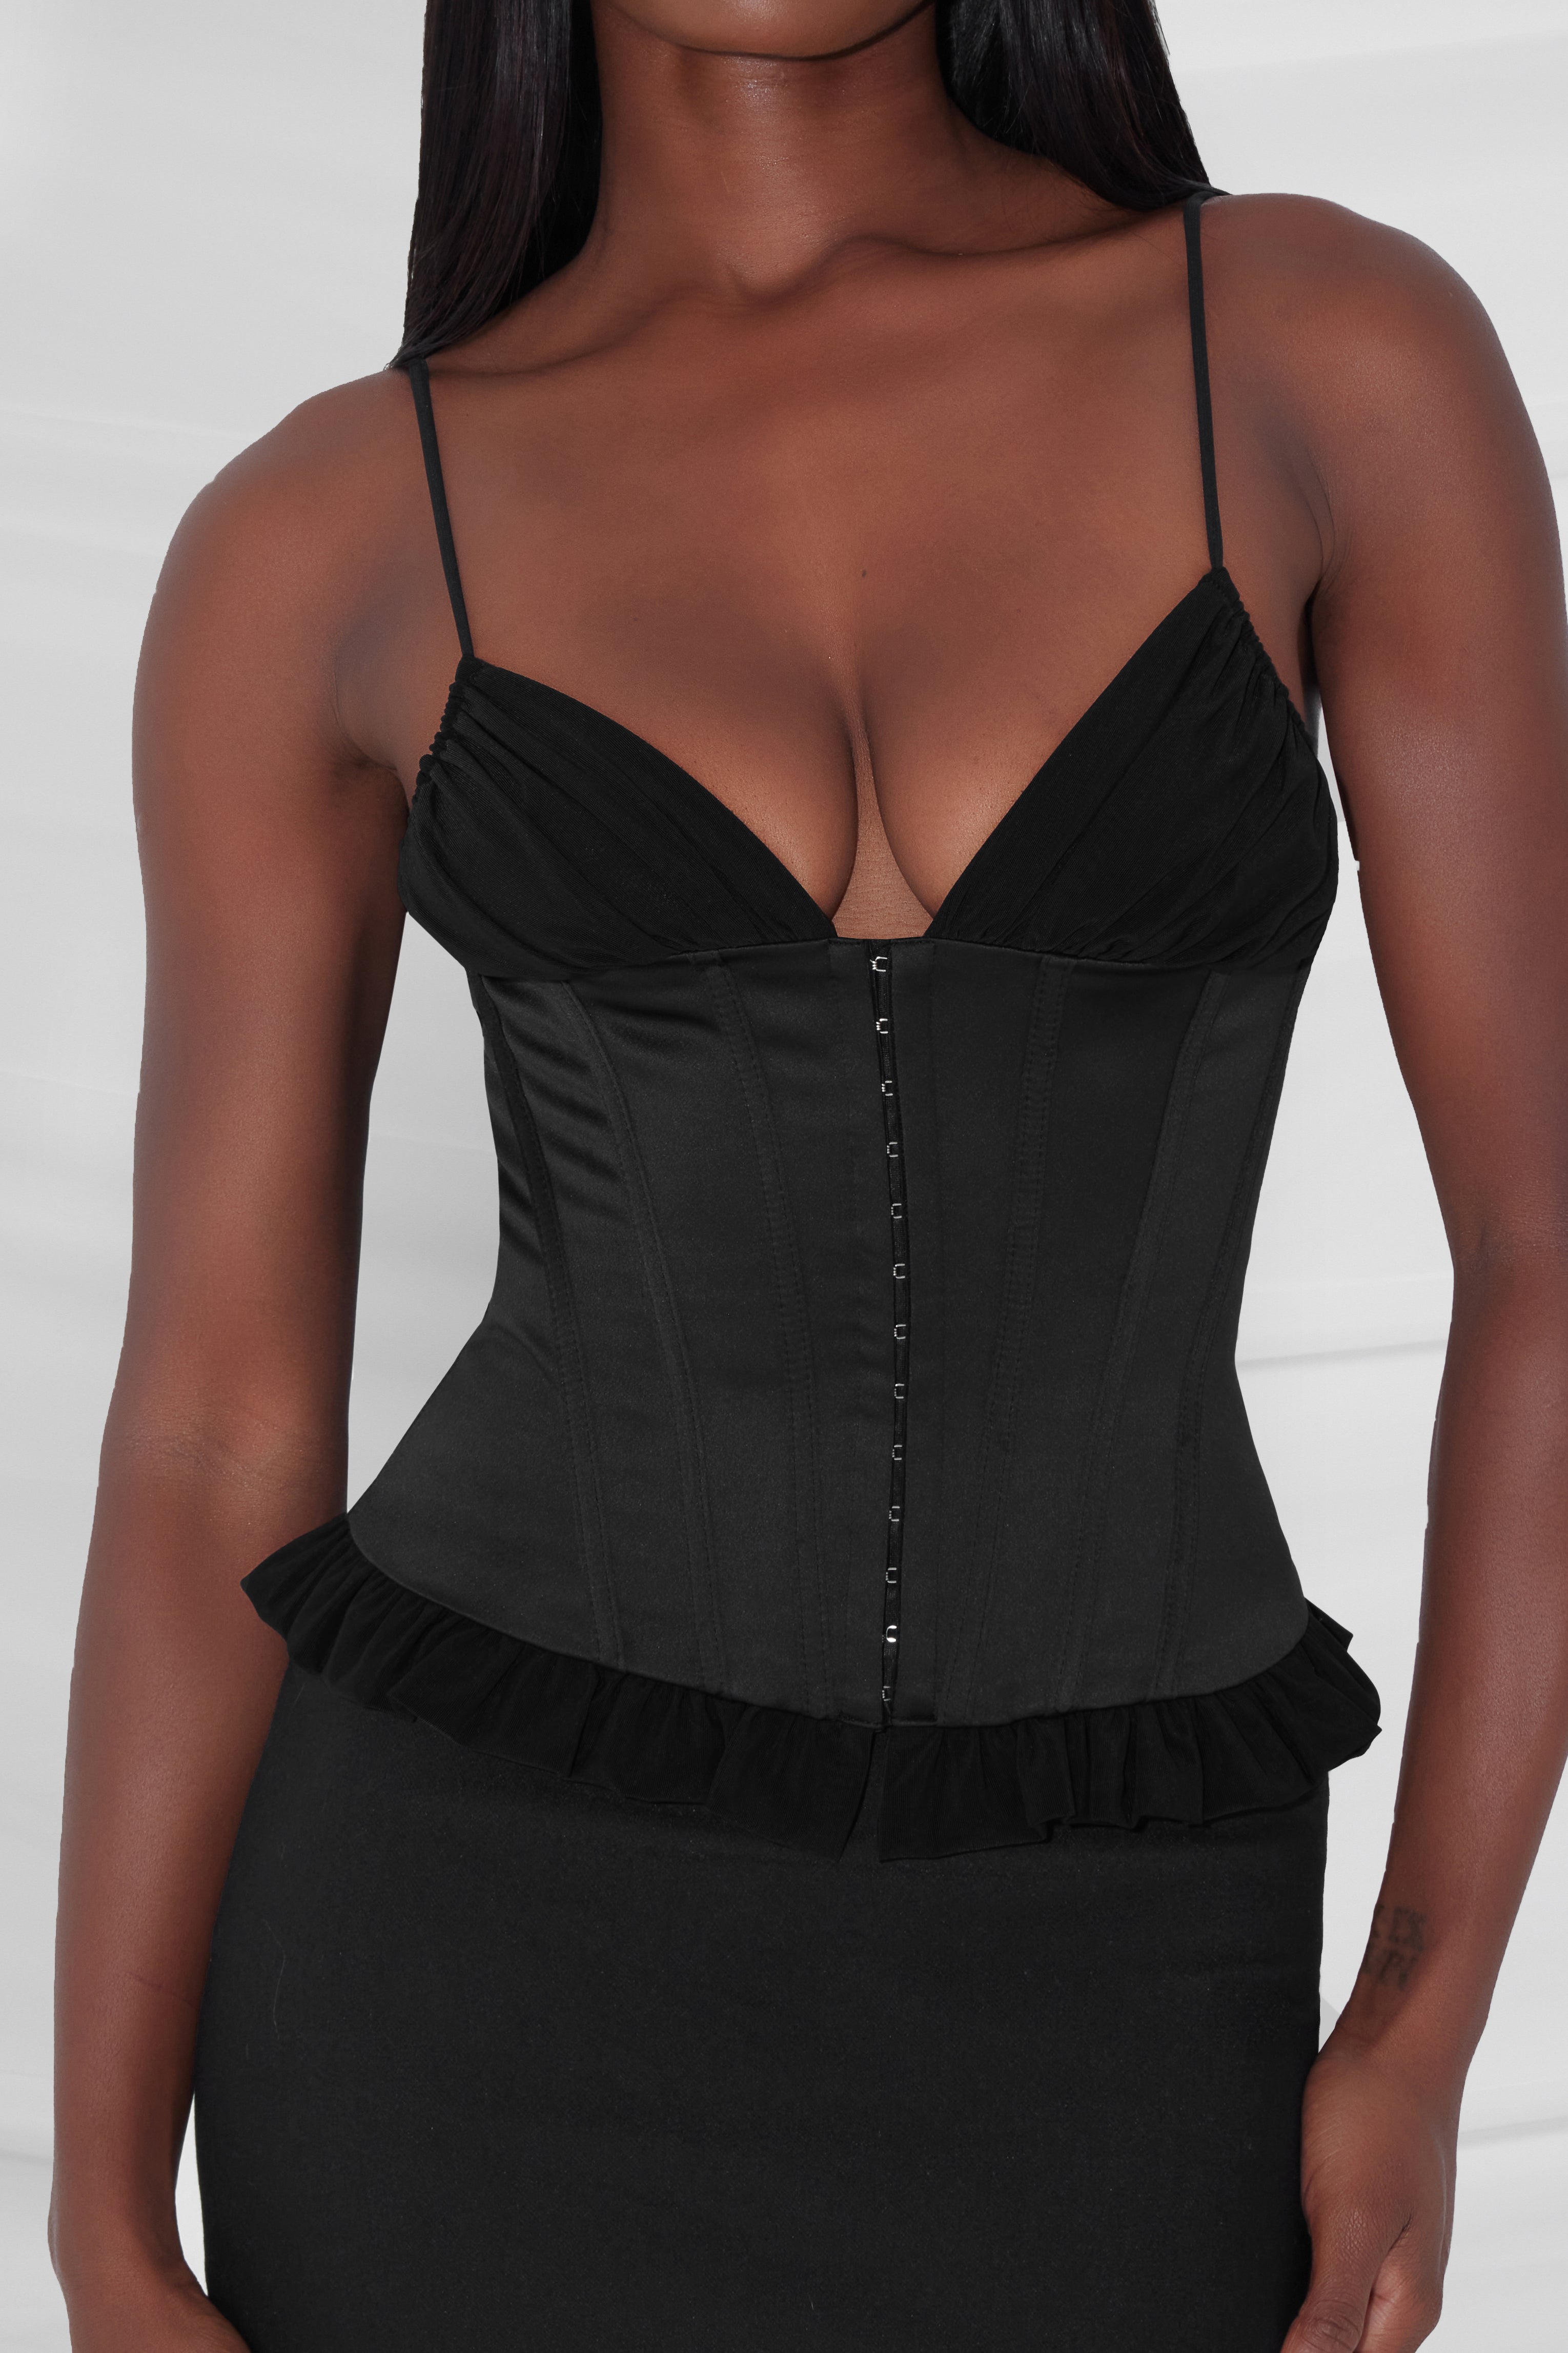 shop all new corsets and more! 💥 - I Am Koko La